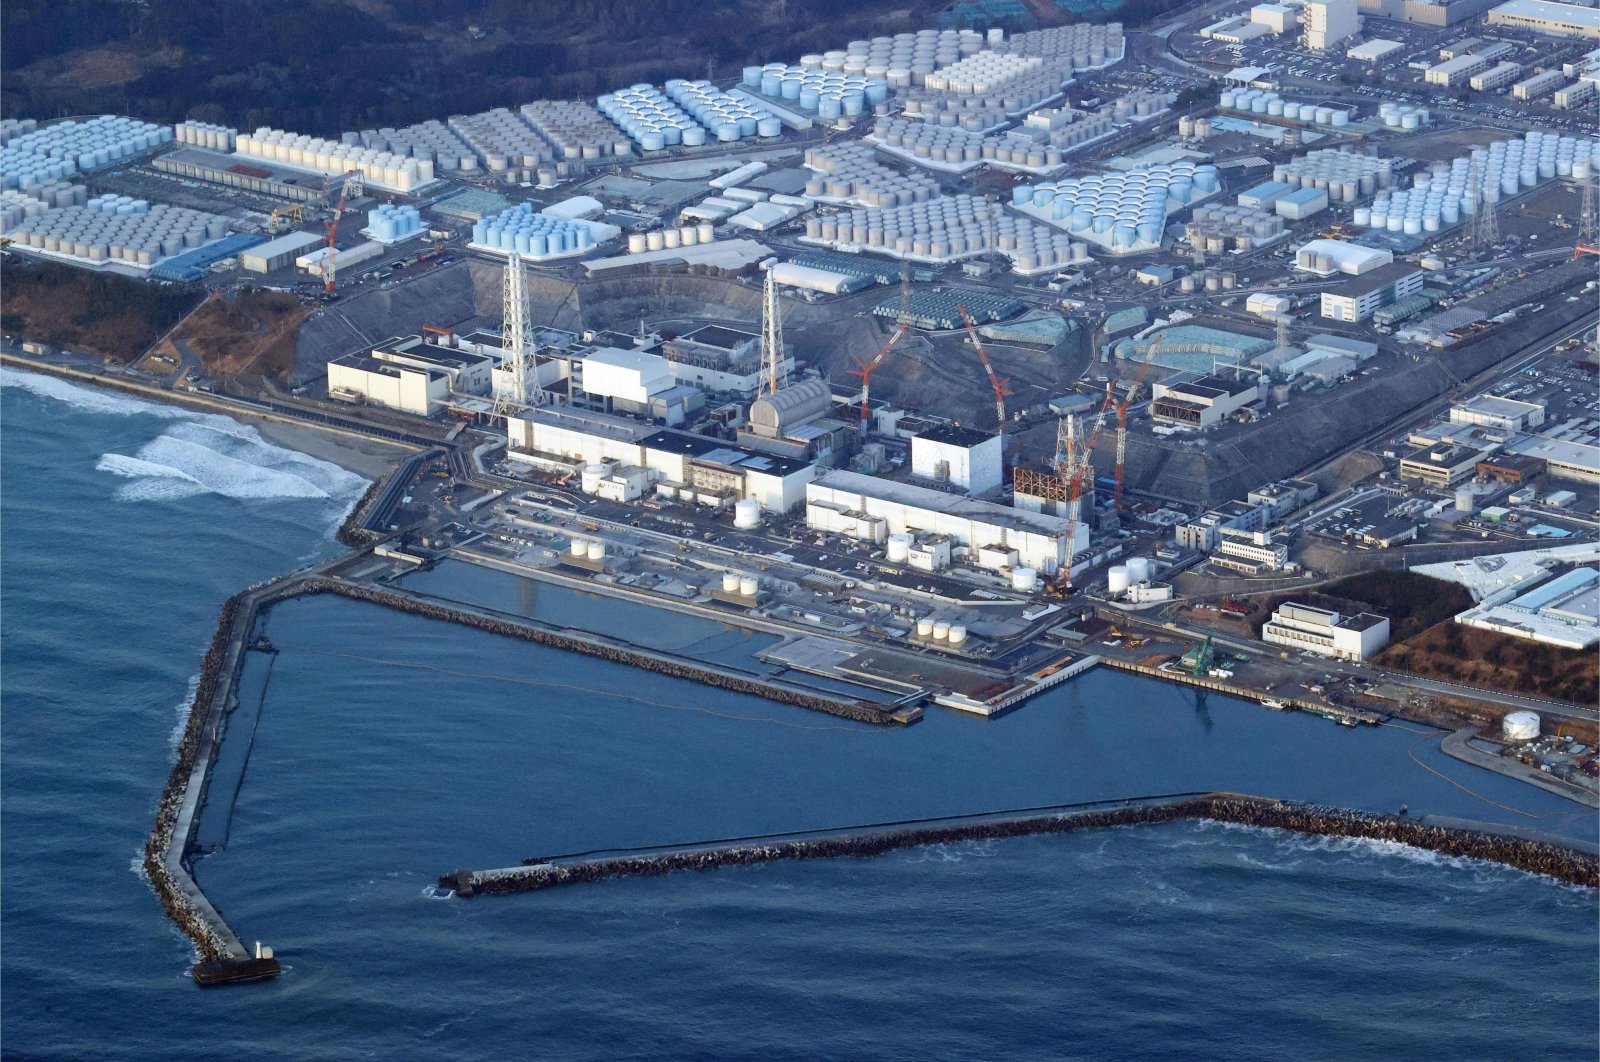 Jepang beralih ke tenaga nuklir untuk mengatasi krisis energi, mencapai sasaran iklim